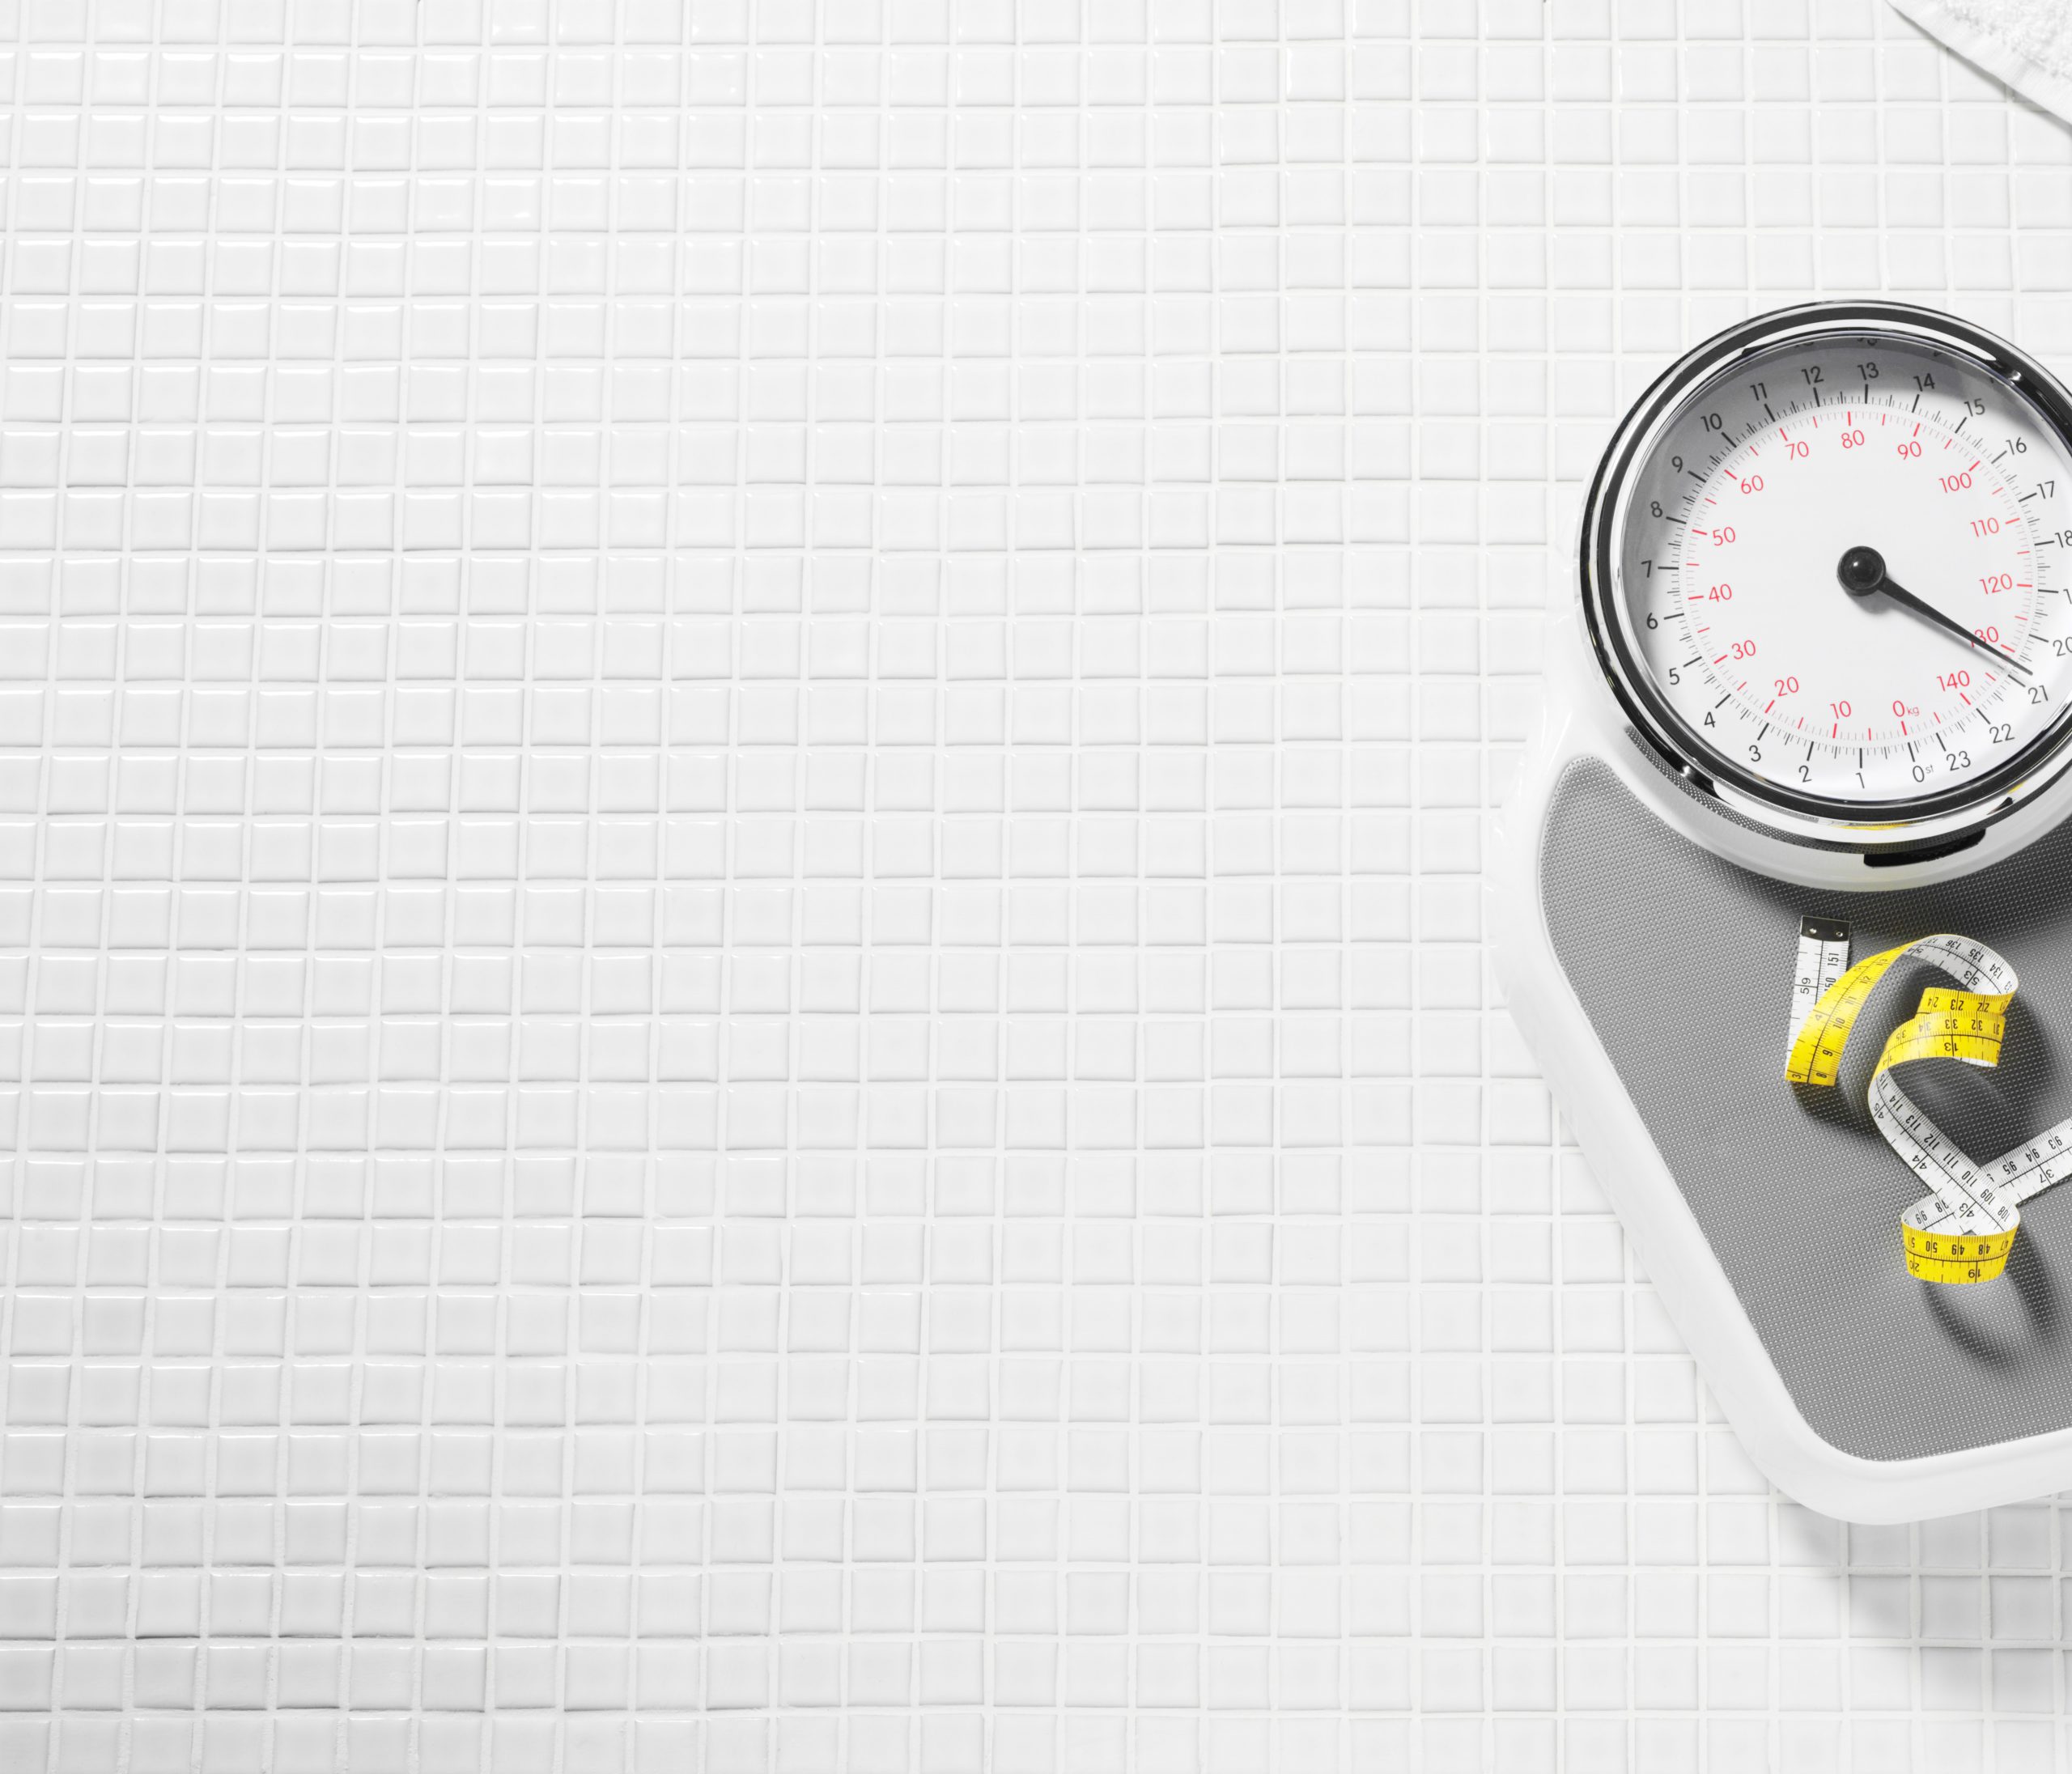 Medicamentele naturale nu ar trebui să fie benefice pentru pierderea în greutate: examinare nouă